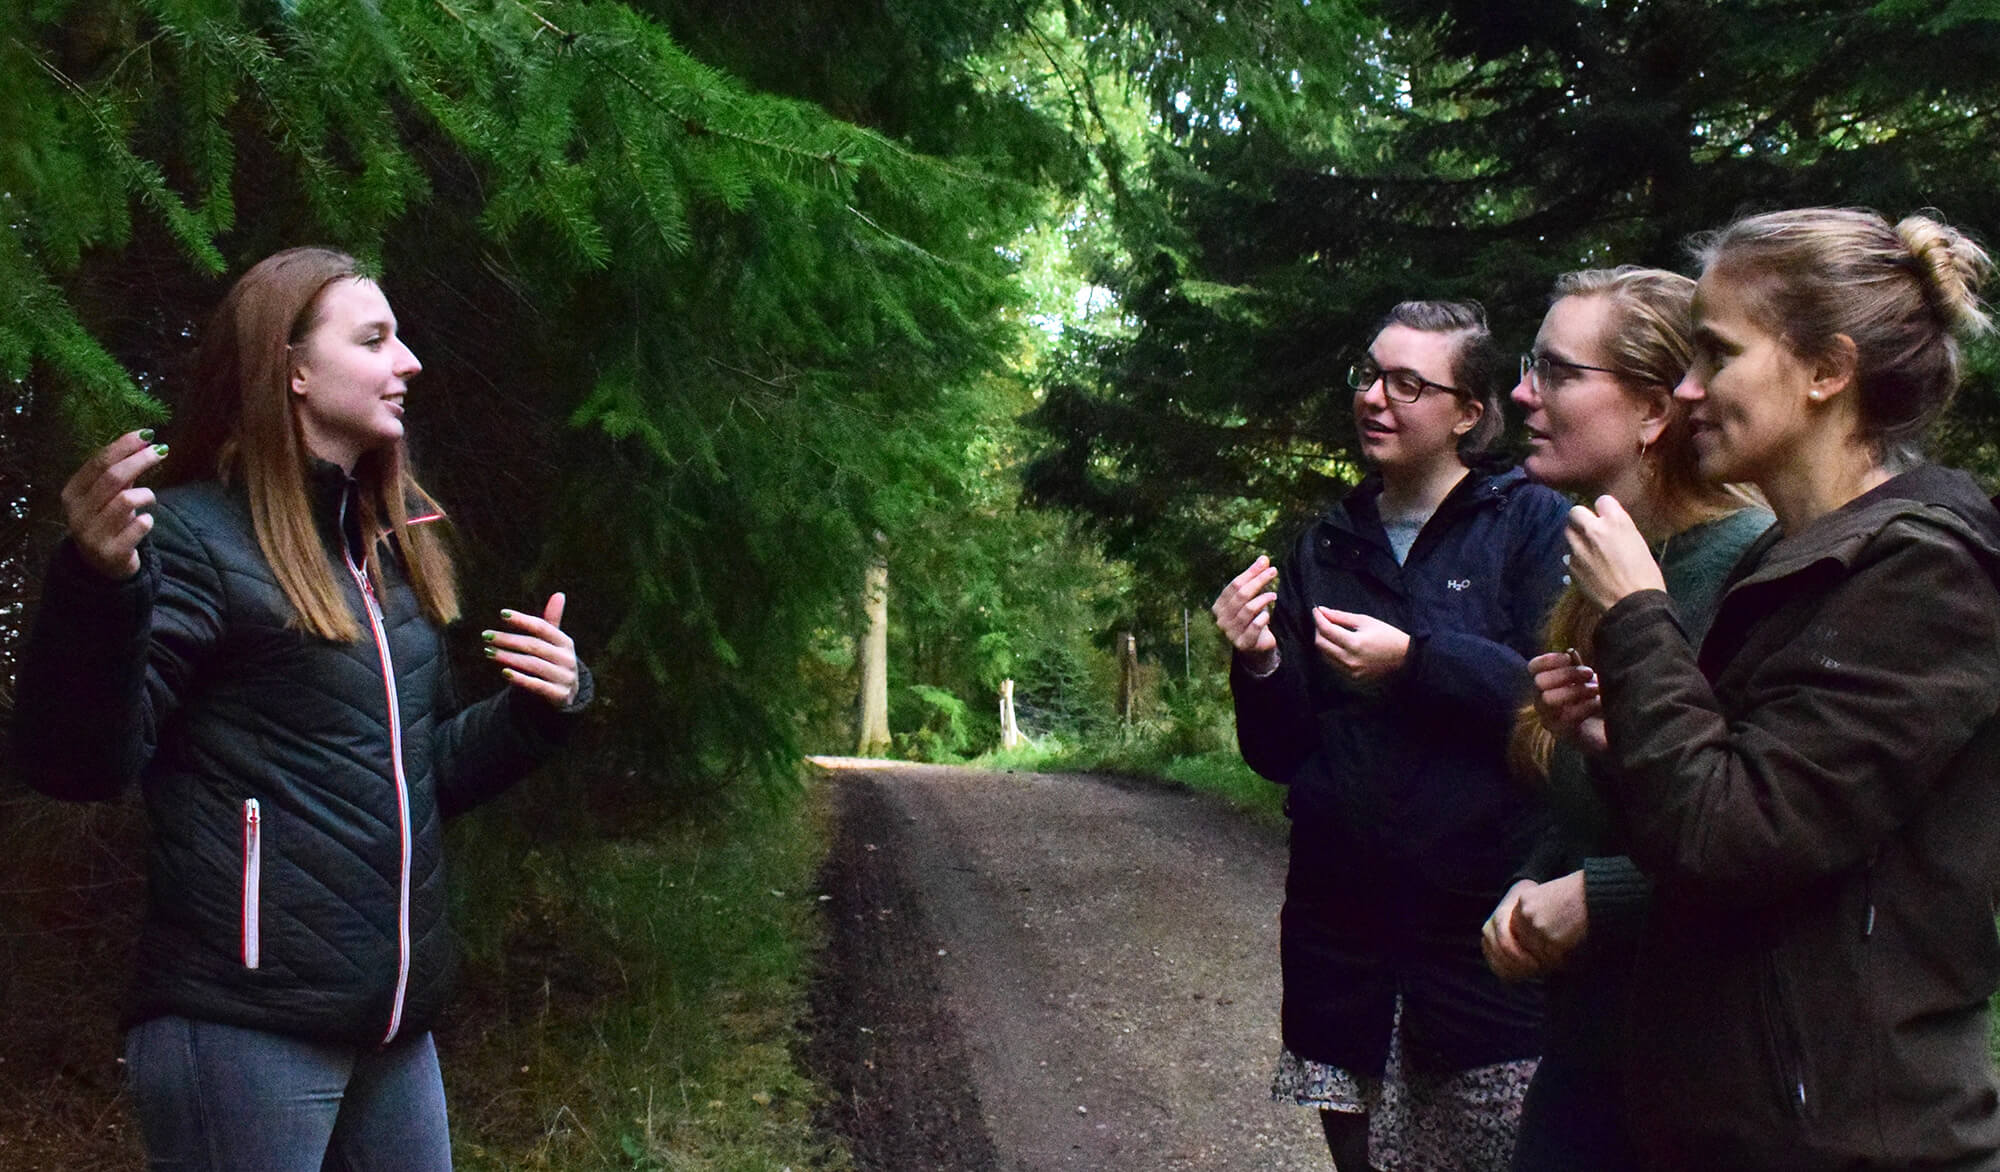 En natur- og kulturformidler guider og fortæller for tre gæster i skoven